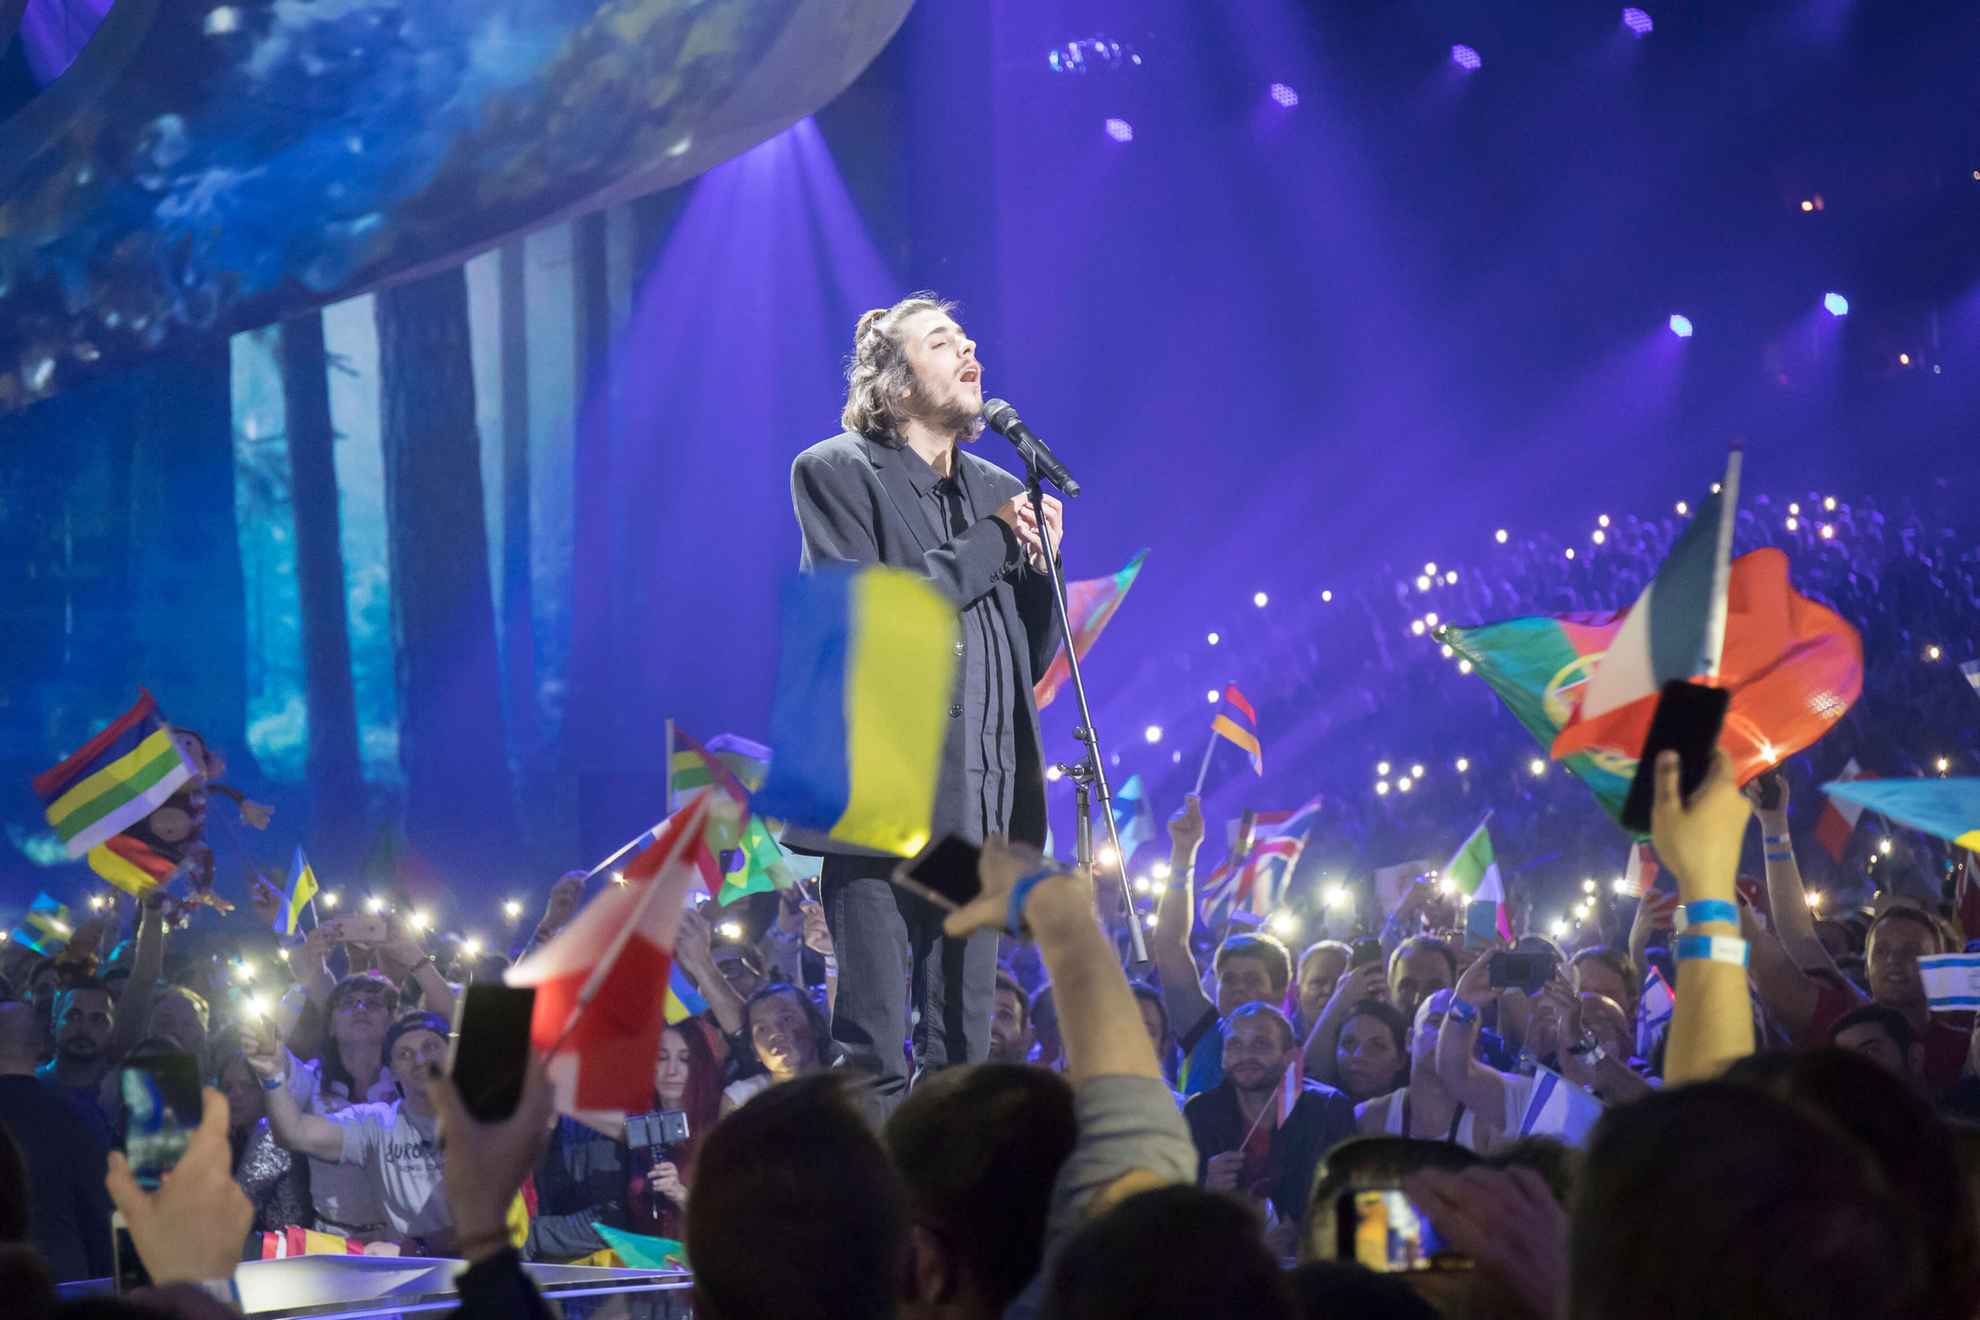 Salvador Sobral, winnaar van het Eurovisie Songfestival 2017, treedt op op het podium.